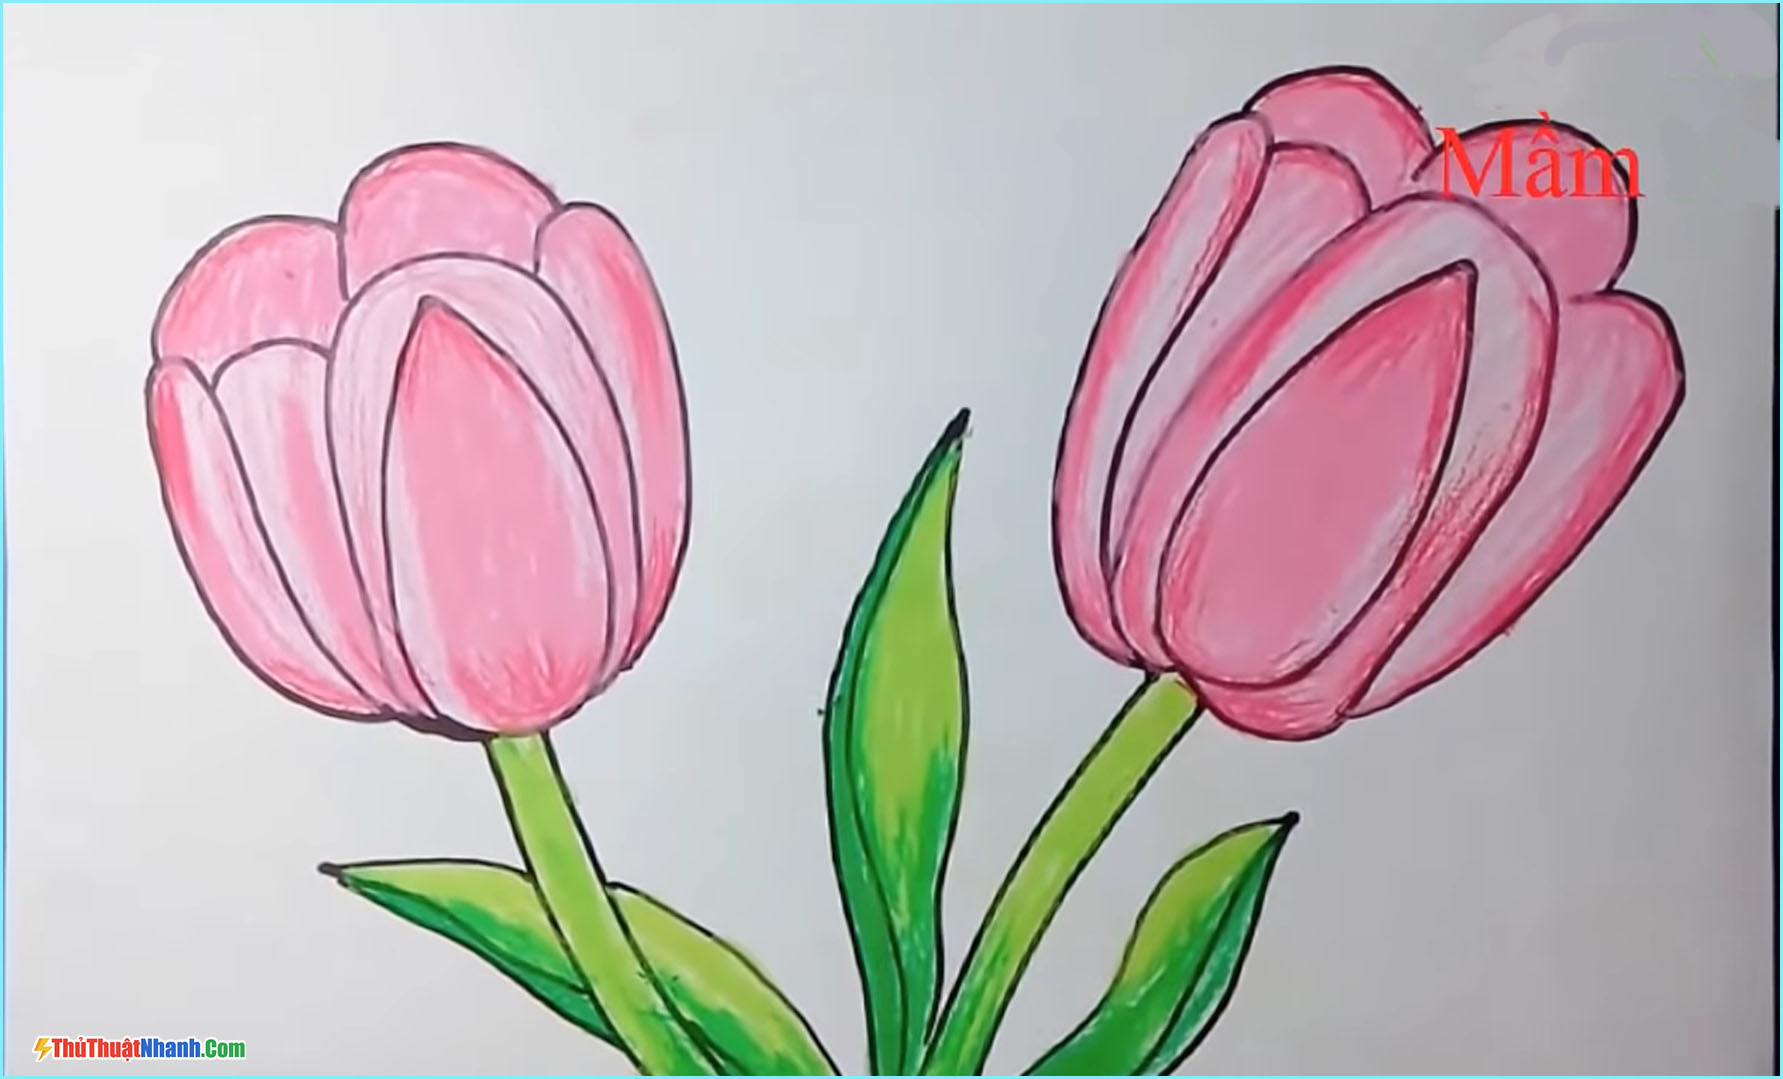 Cách vẽ hoa anh đào đơn giản  Hướng dẫn vẽ hoa anh đào bằng bút chì   YouTube